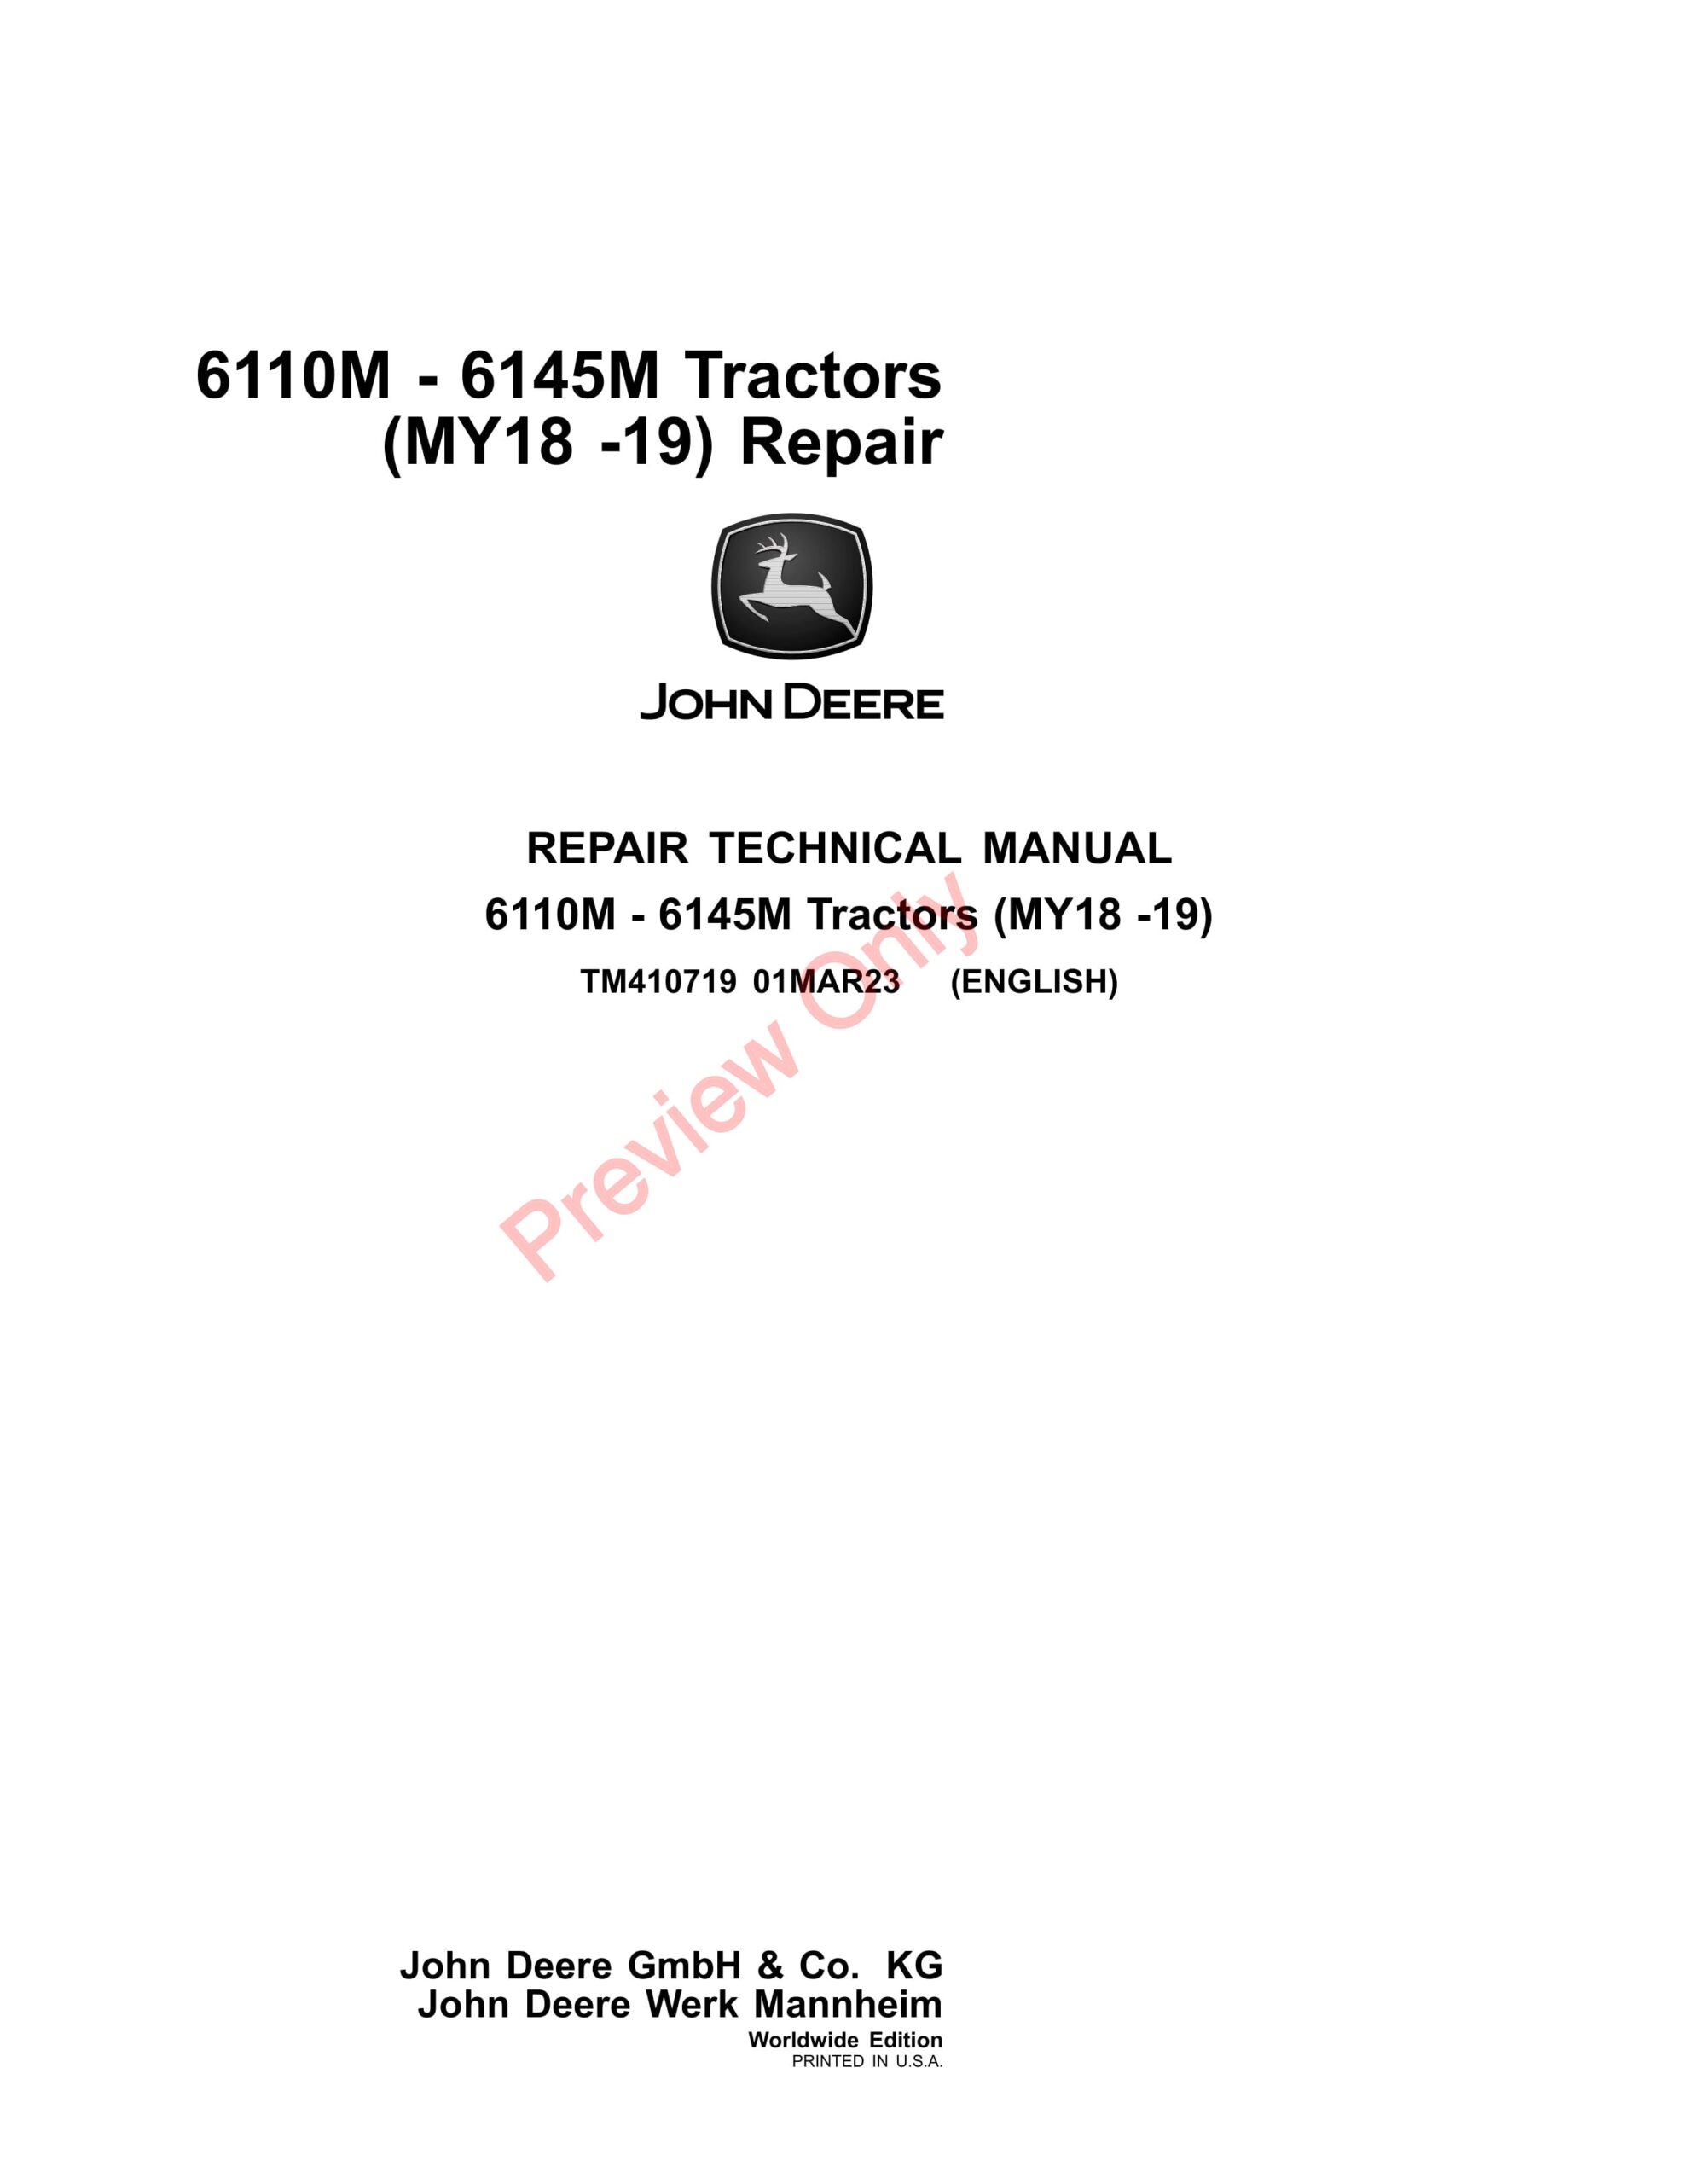 John Deere 6110M – 6145M Tractors (MY18 -19) Repair Technical Manual TM410719 01MAR23-1